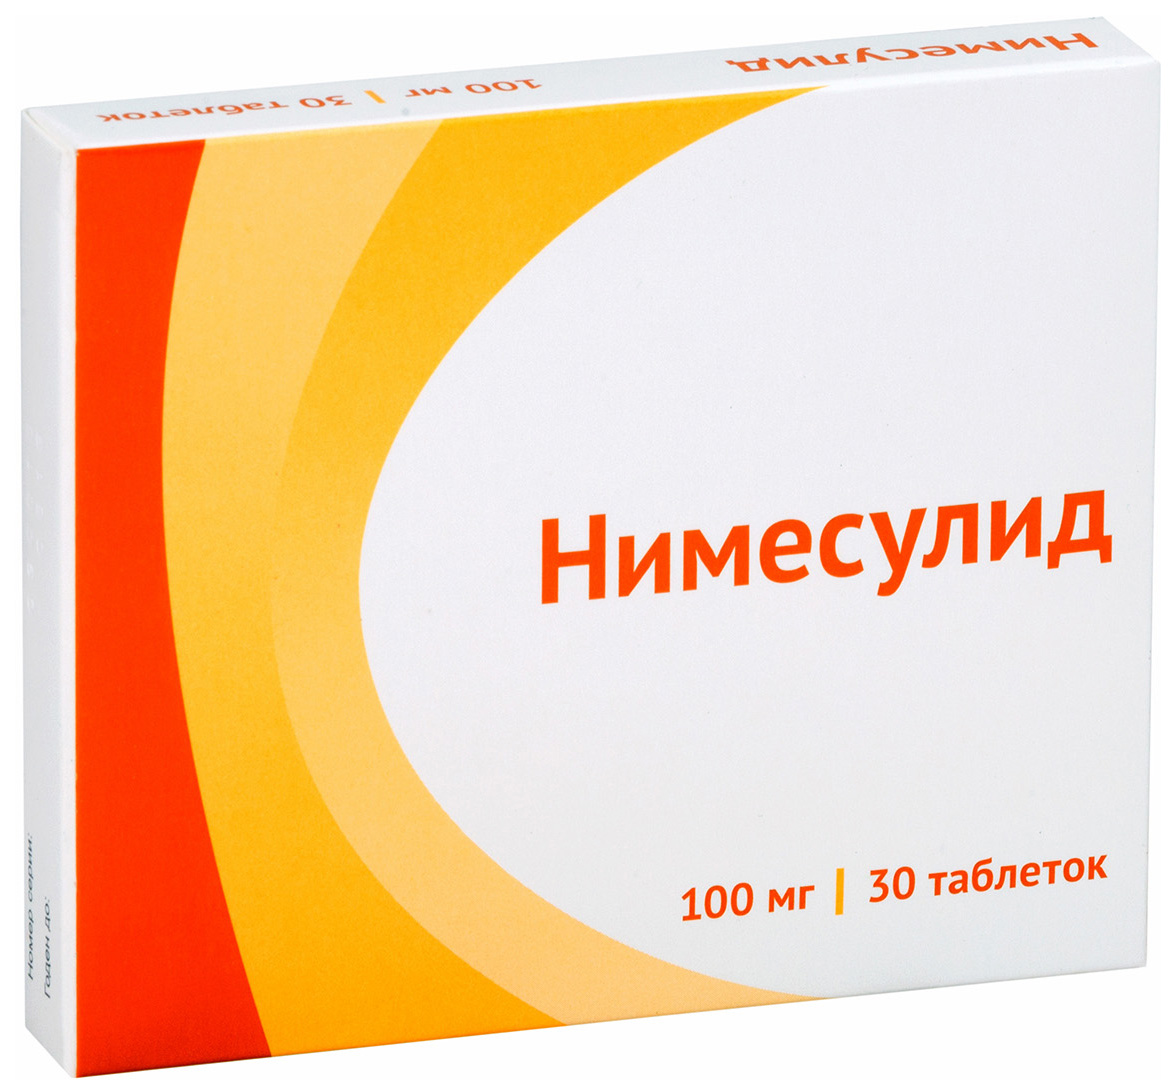 Купить Нимесулид таблетки 100 мг 30 шт., Атолл